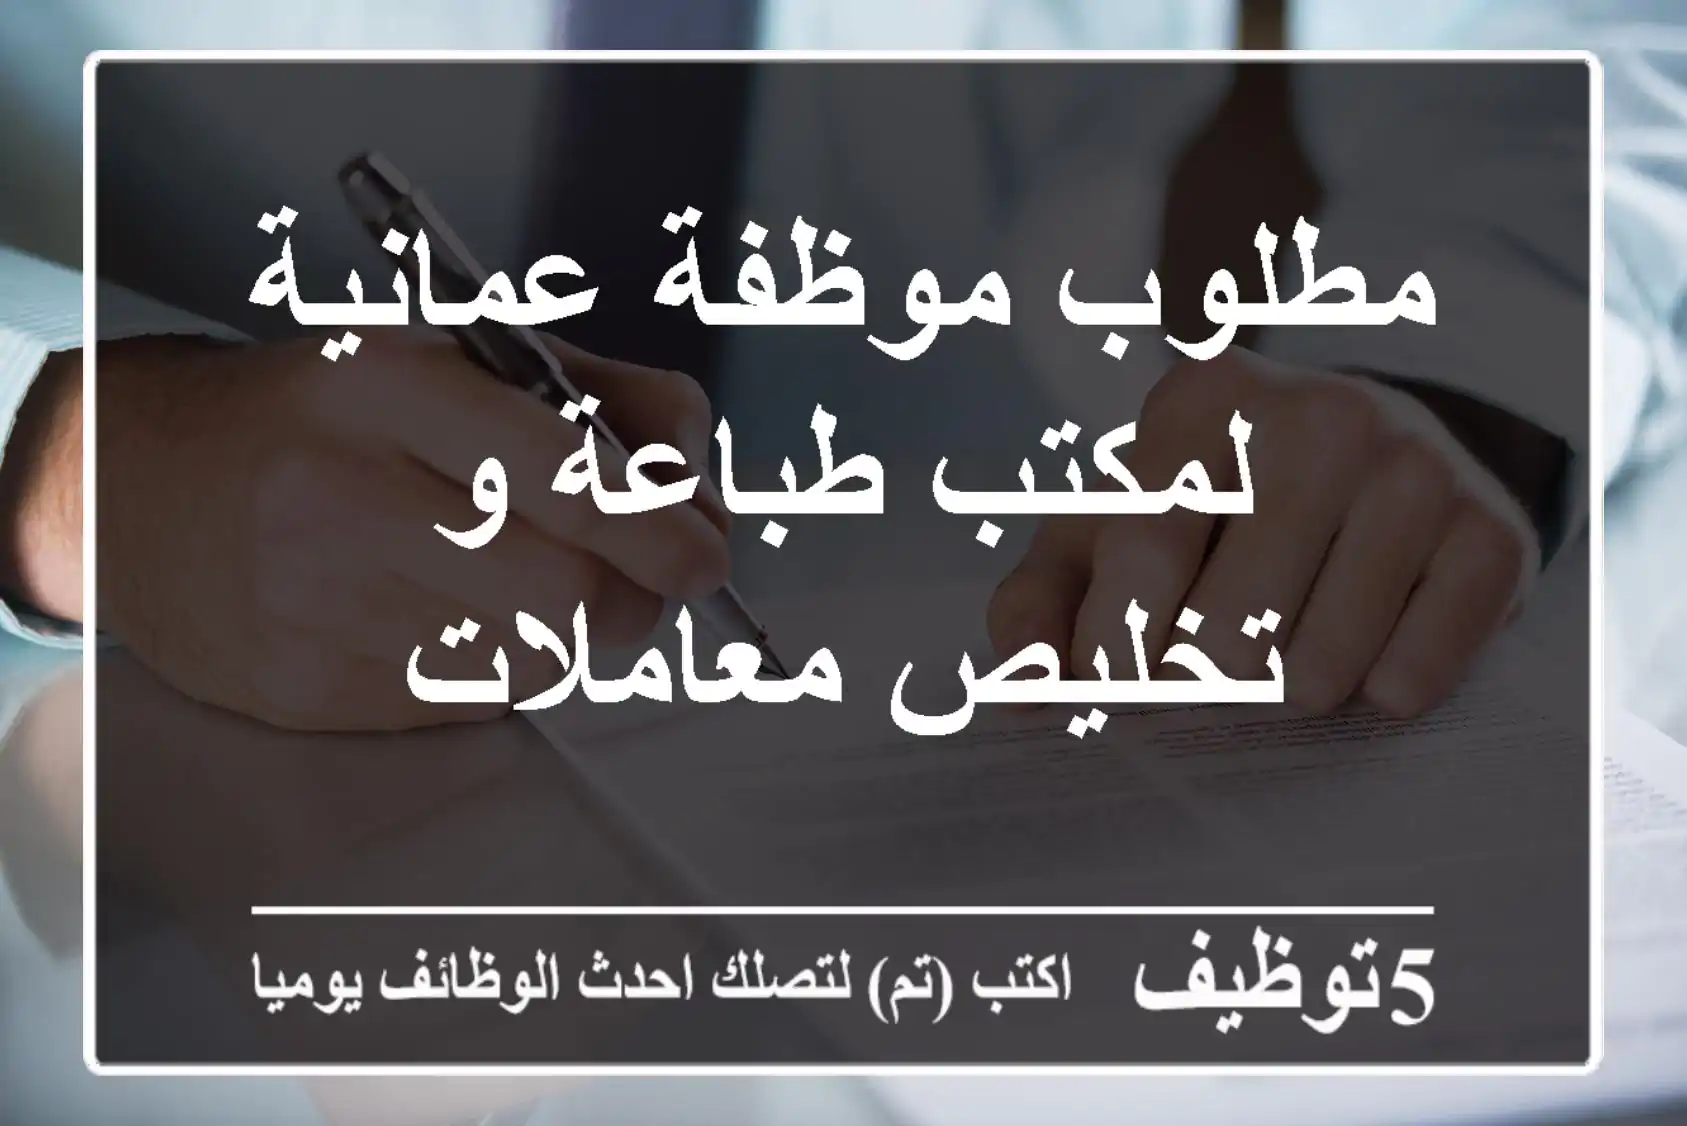 مطلوب موظفة عمانية لمكتب طباعة و تخليص معاملات